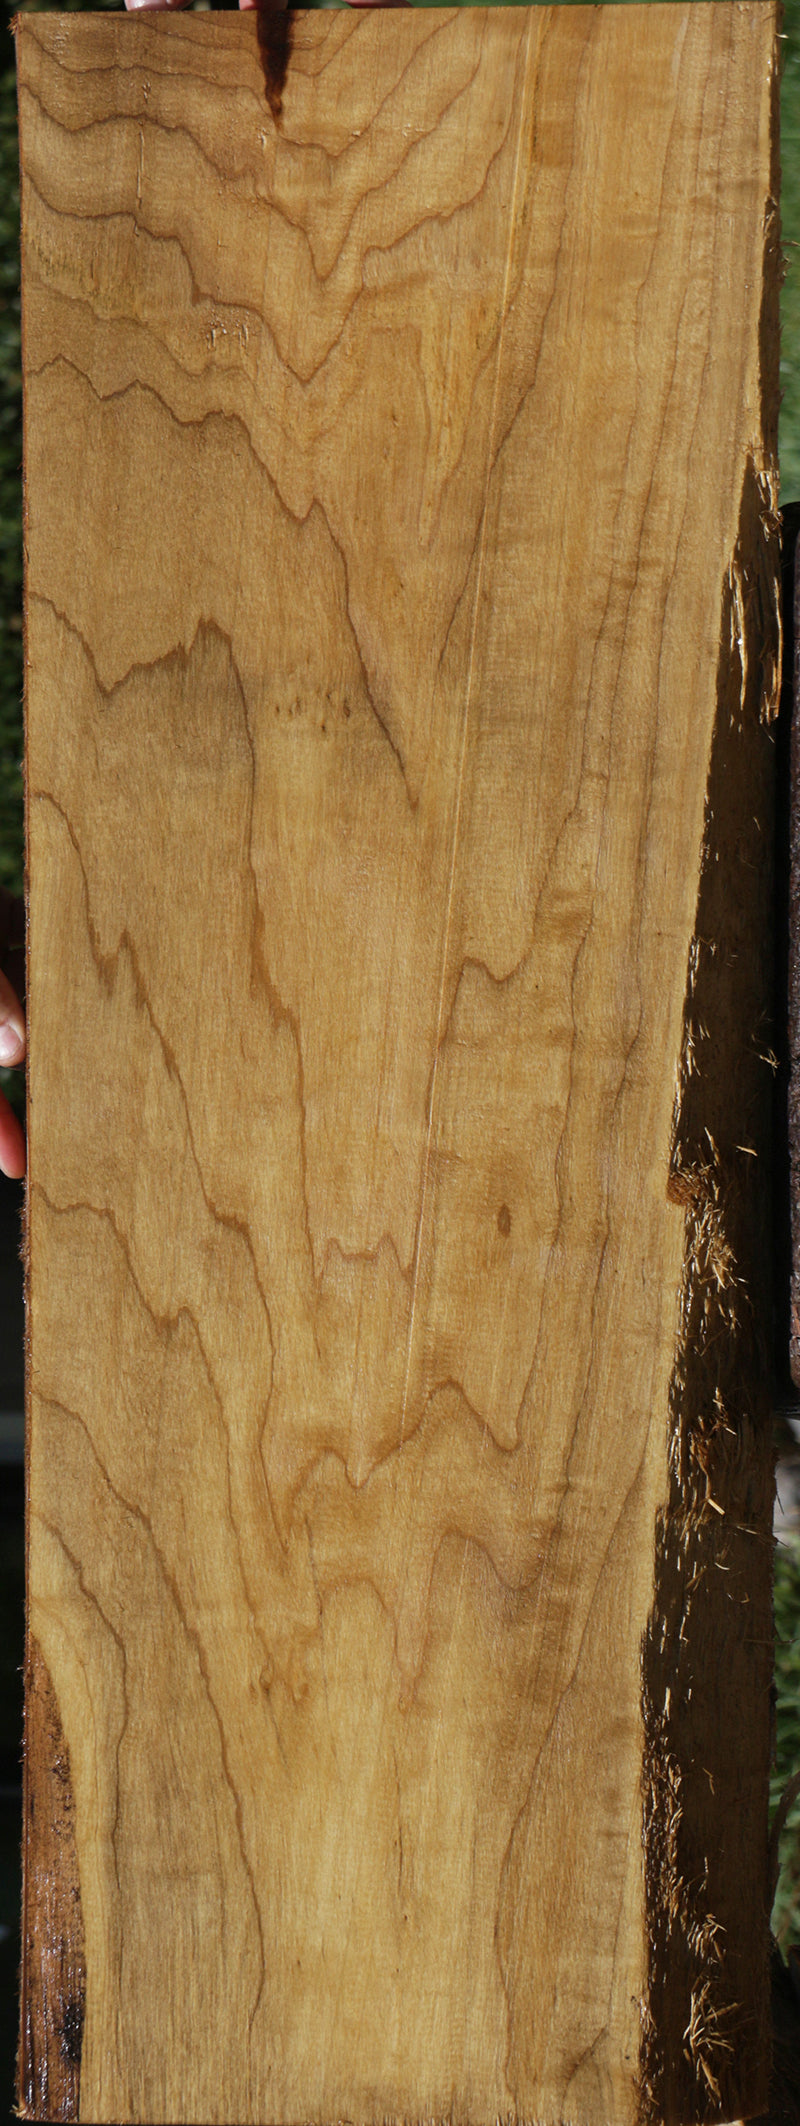 Fiddleback French Poplar Lumber